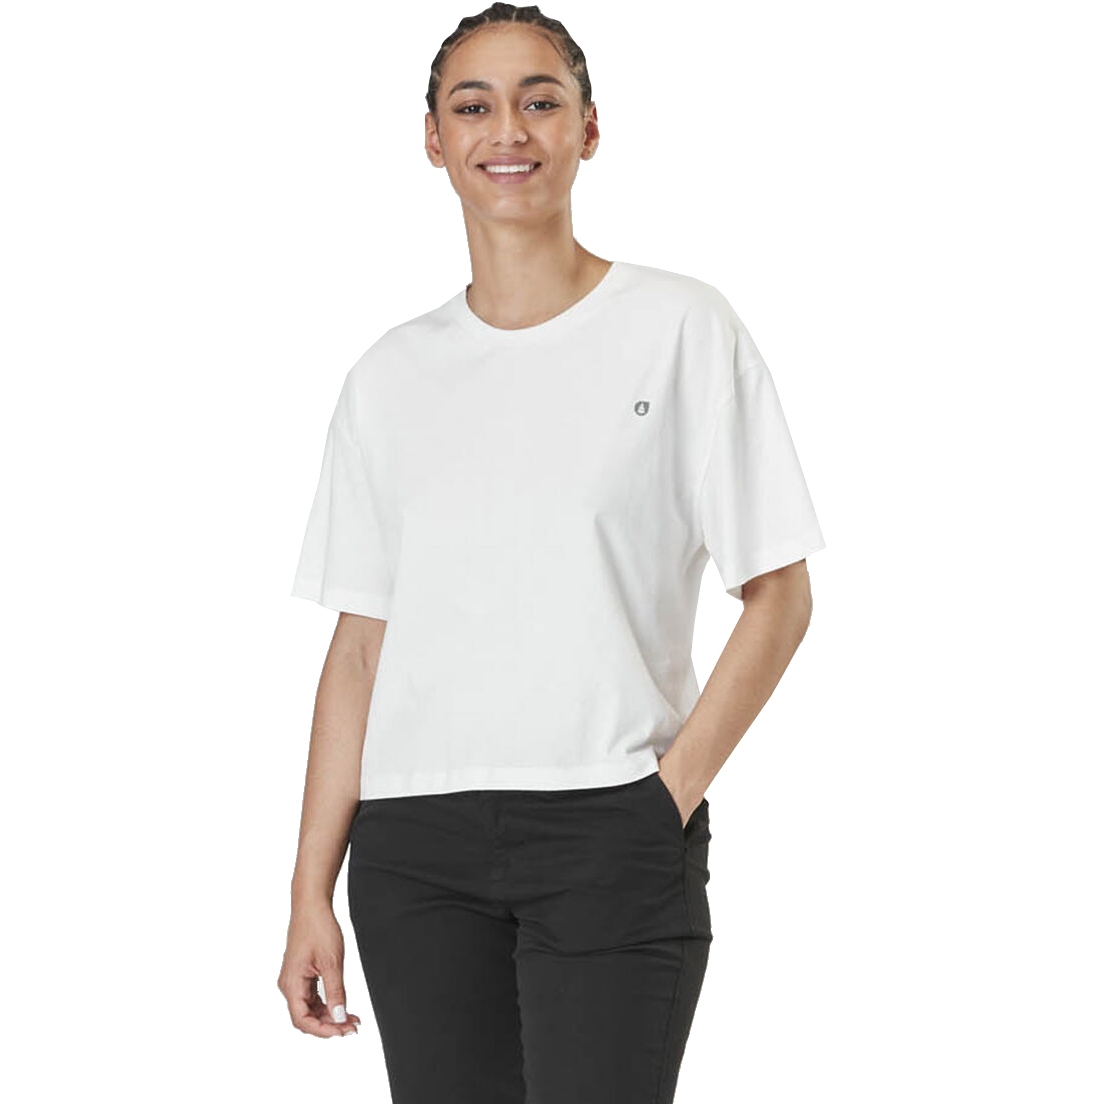 Produktbild von Picture Keynee Damen T-Shirt - Weiß